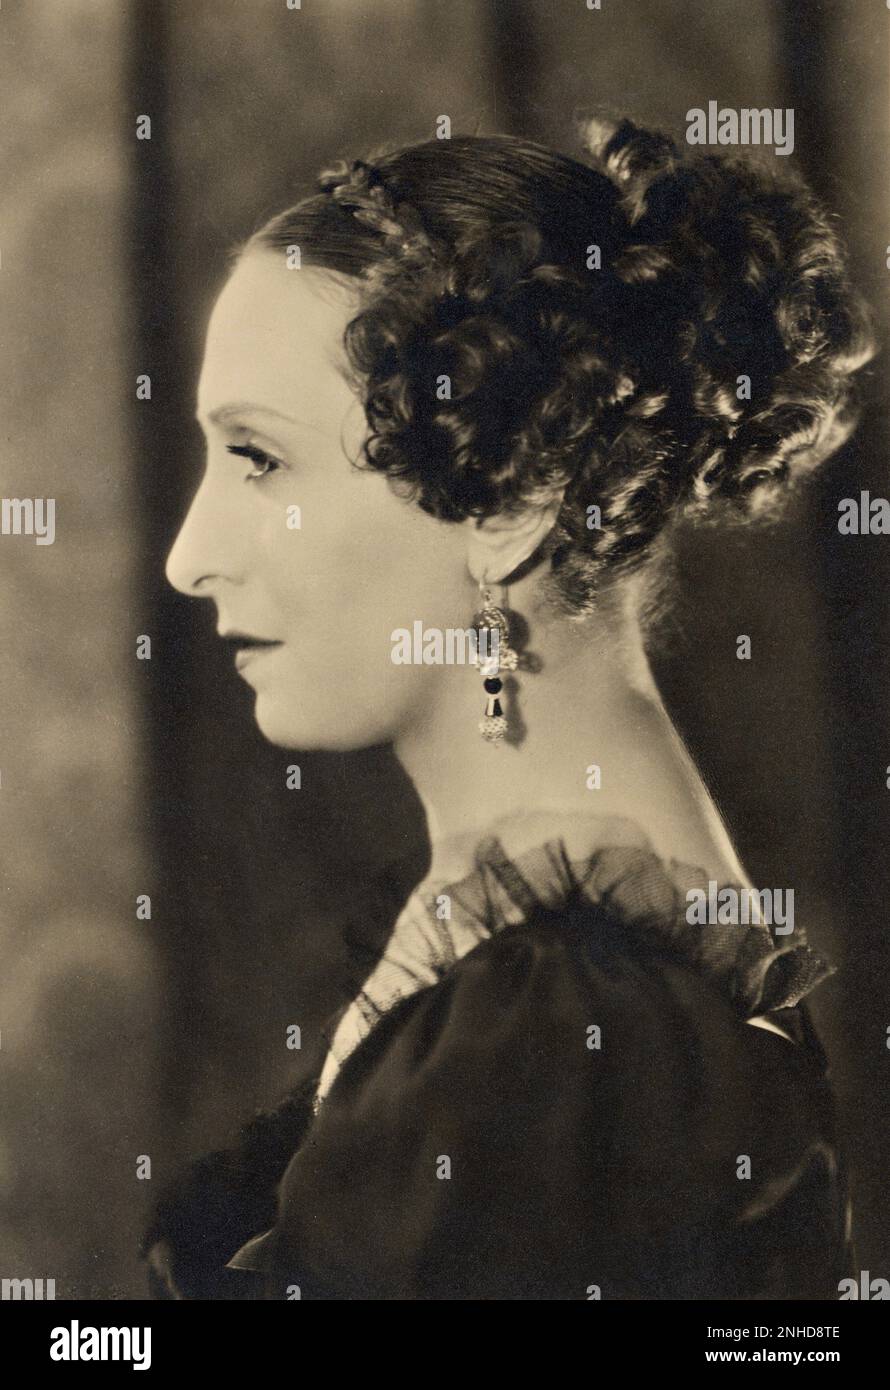 1934 : The italian theatre actress MARTA ABBA ( Milano 1900 - 1988 ), celebrated lover of playwriter Luigi Pirandello , in the movie TERESA CONFALONIERI by Guido Brignone , from a screenplay by Tomaso Smith ( 1896 - 1967 ) - CINEMA - FILM - TEATRO - attrice teatrale e cinematografica - THEATER - portrait - ritratto - profilo - profile - eardrops - orecchino - orecchini - jewels - gioiello - gioielli  - chignon - collo - neck ----    Archivio GBB Stock Photo